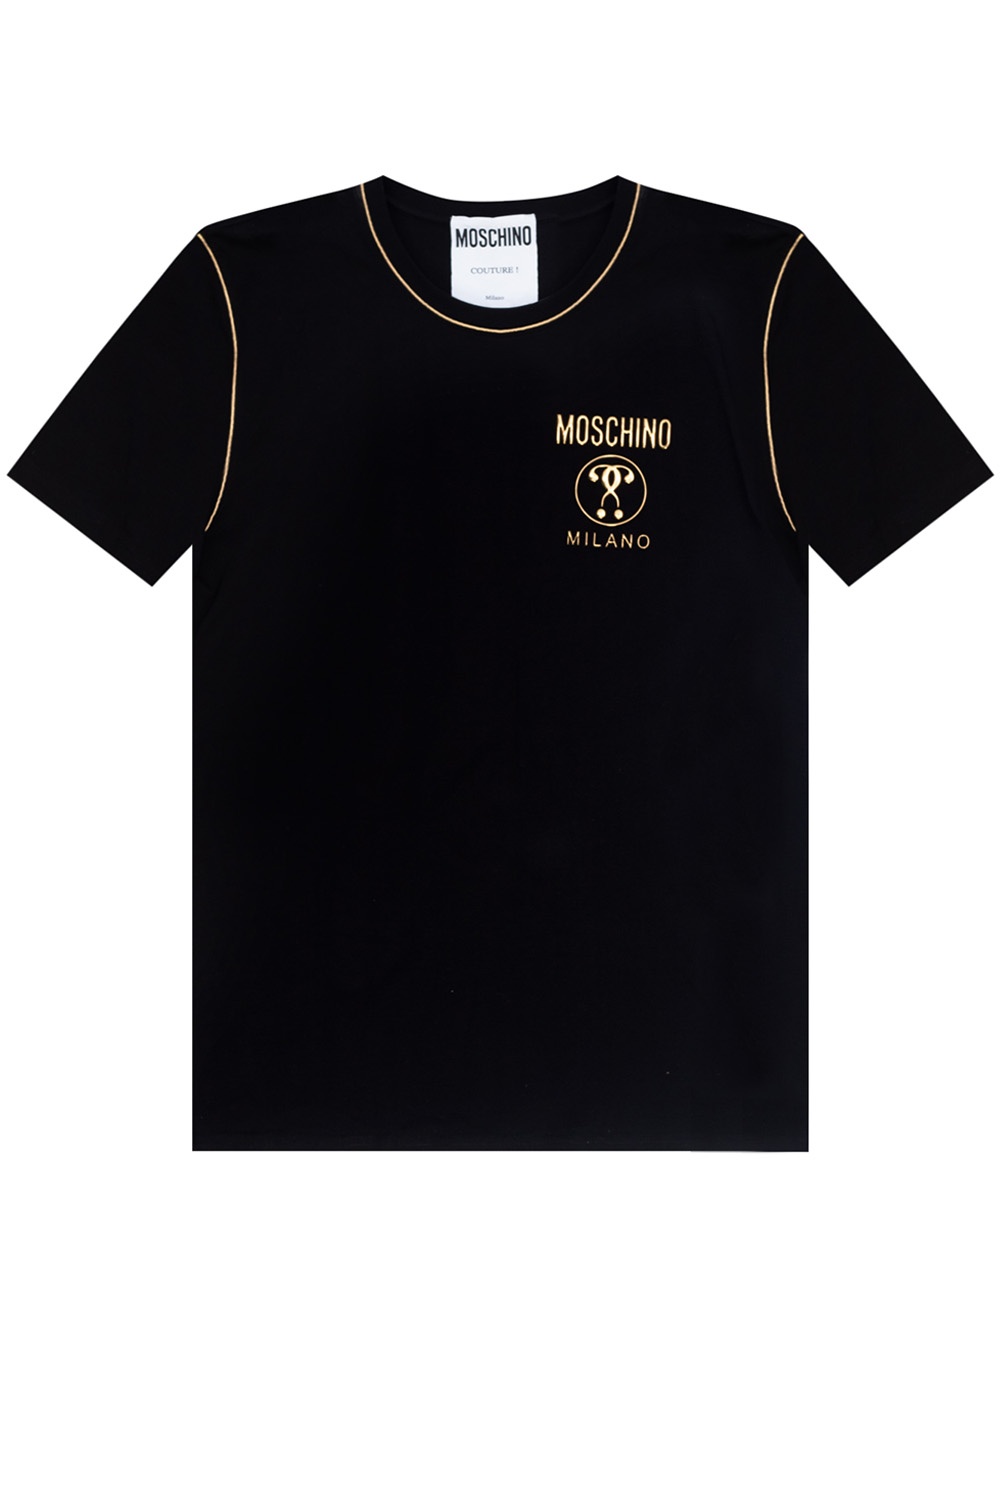 moschino t shirt size guide